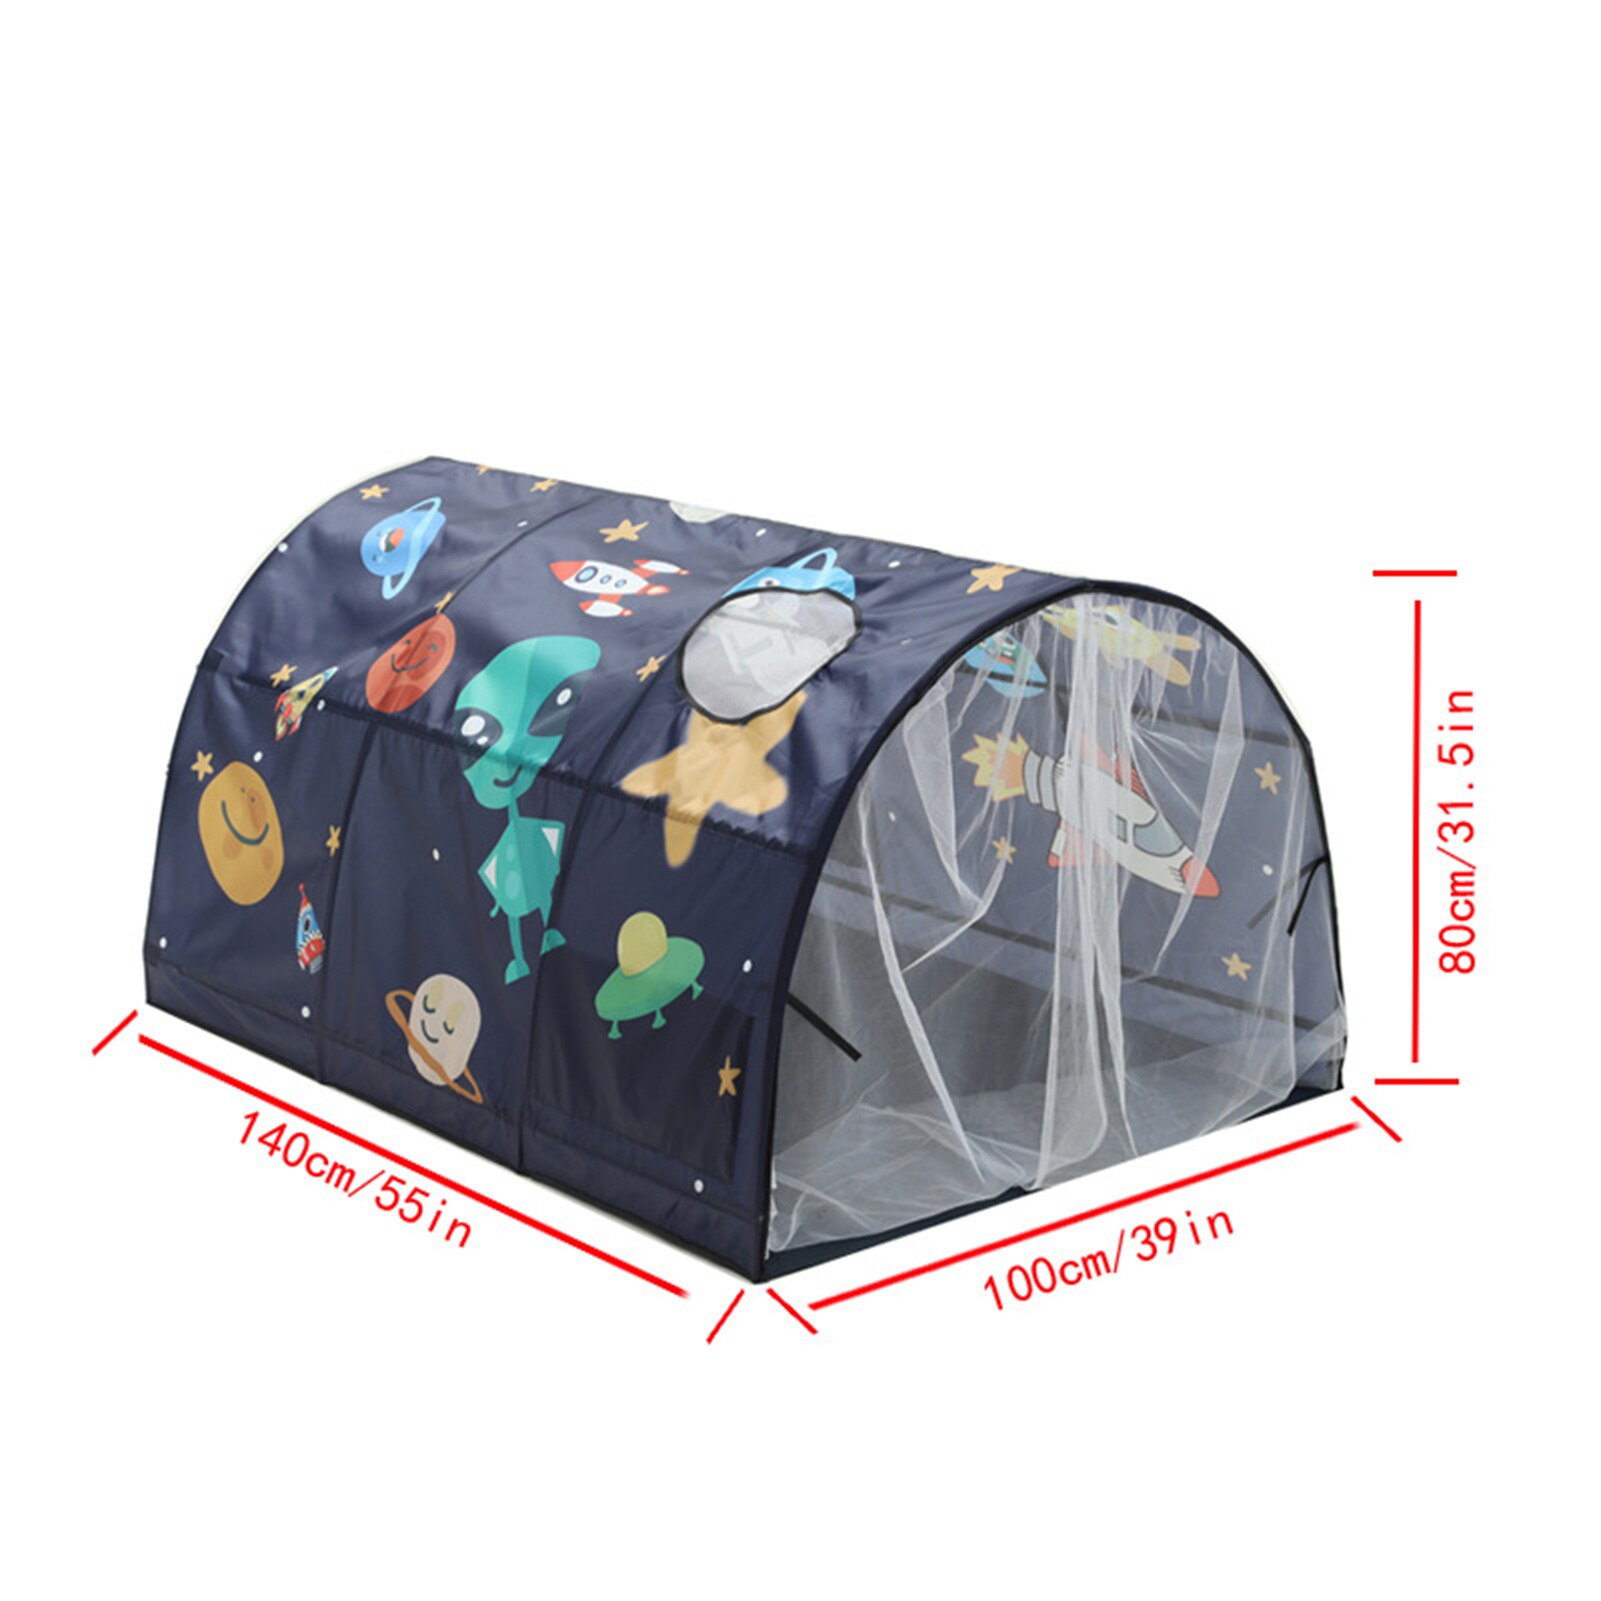 Tegneserie mønster seng baldakin drøm telt børn lege pop op telte legehus for børn